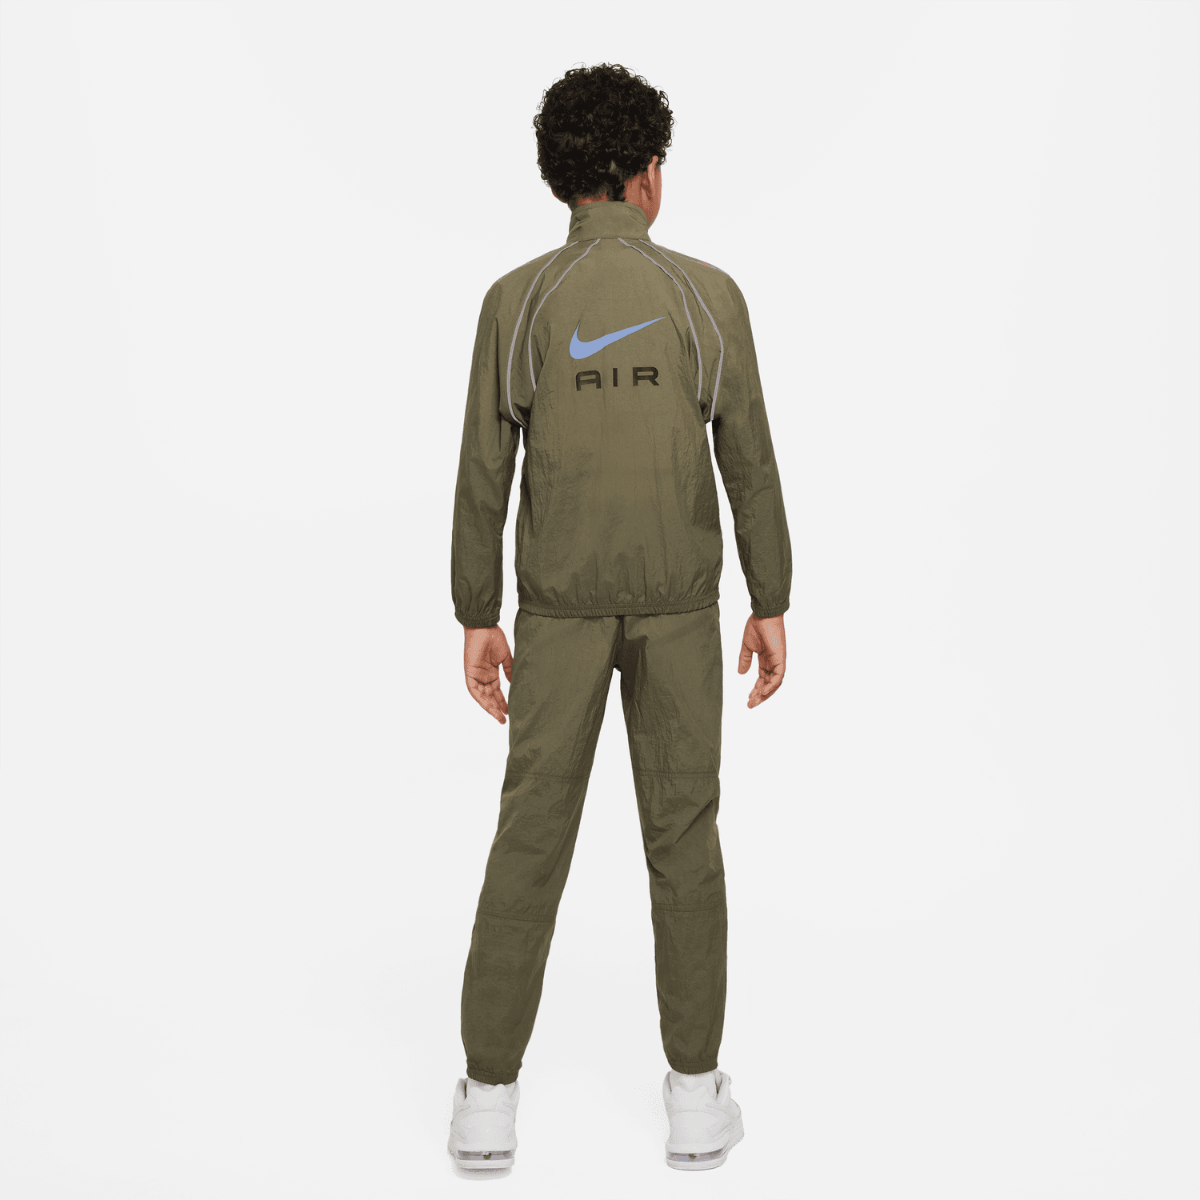 Nike Air Junior-Trainingsanzug – Khaki